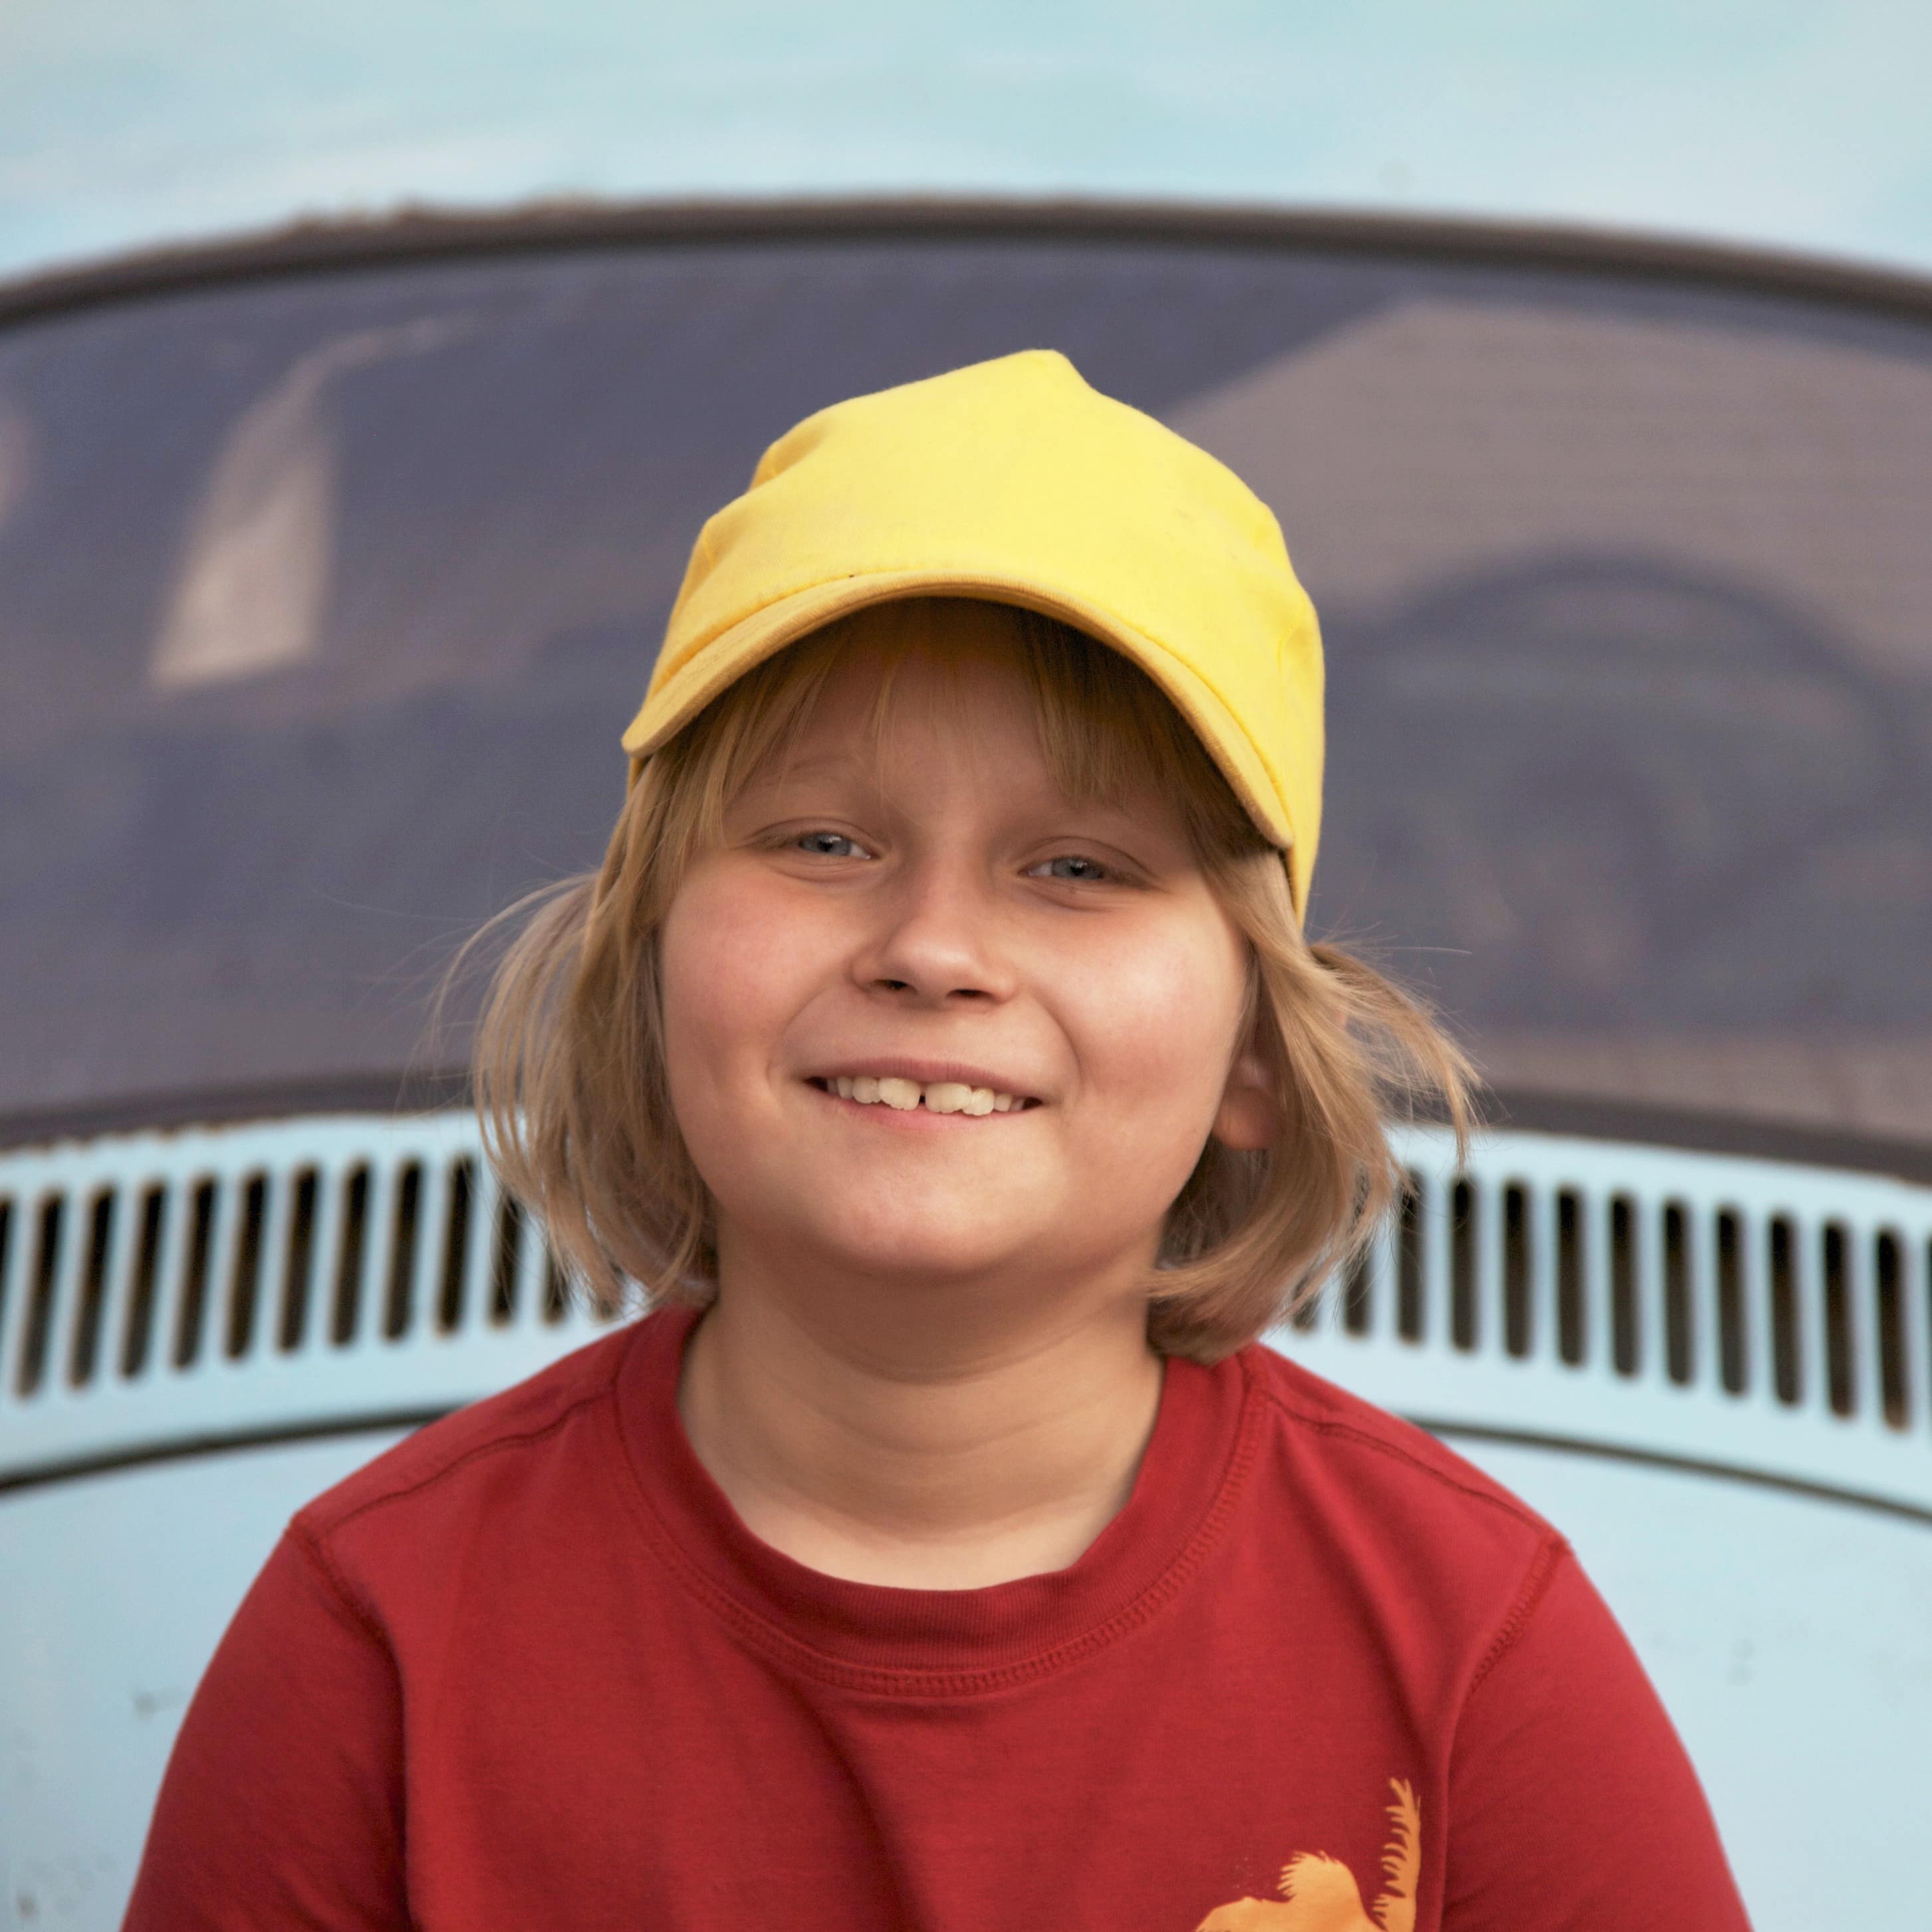 Nahaufnahme: Ein June in rotem T-Shirt und mit gelber Mütze vor einem VW Käfer.